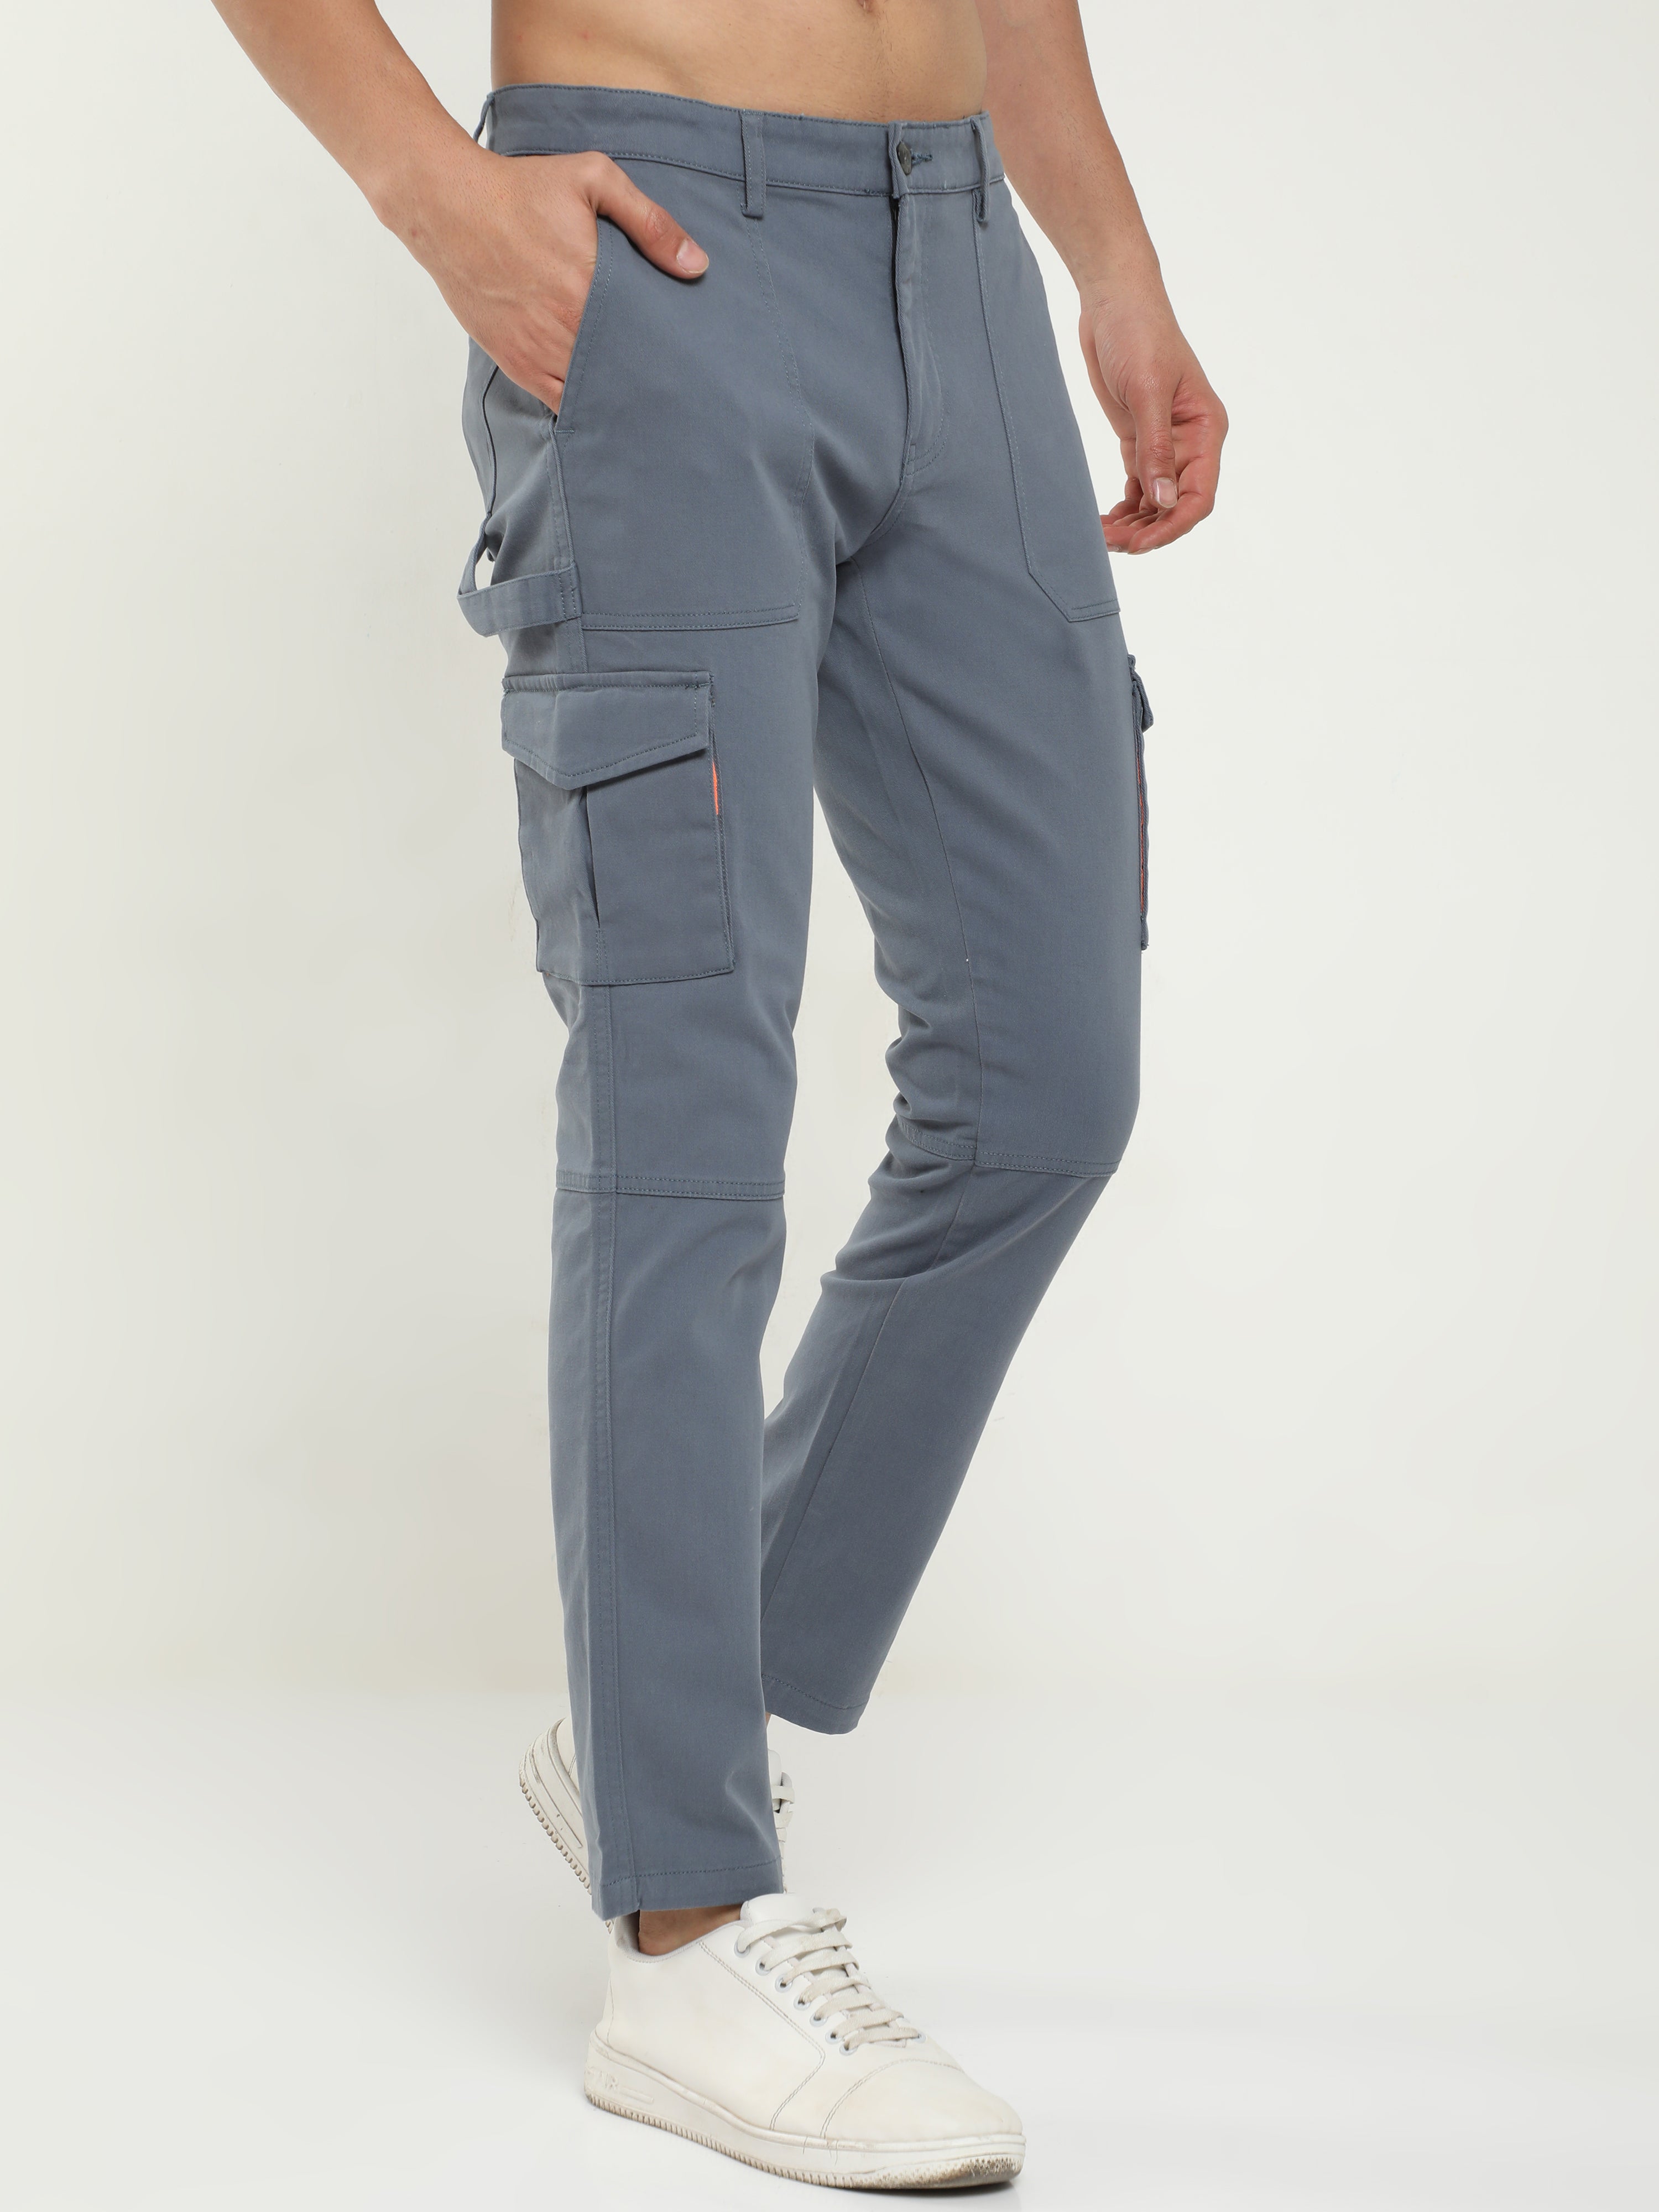 Grey cargo pants outfit | Cargo pants outfit, Cargo pants women outfit,  Cargo outfit